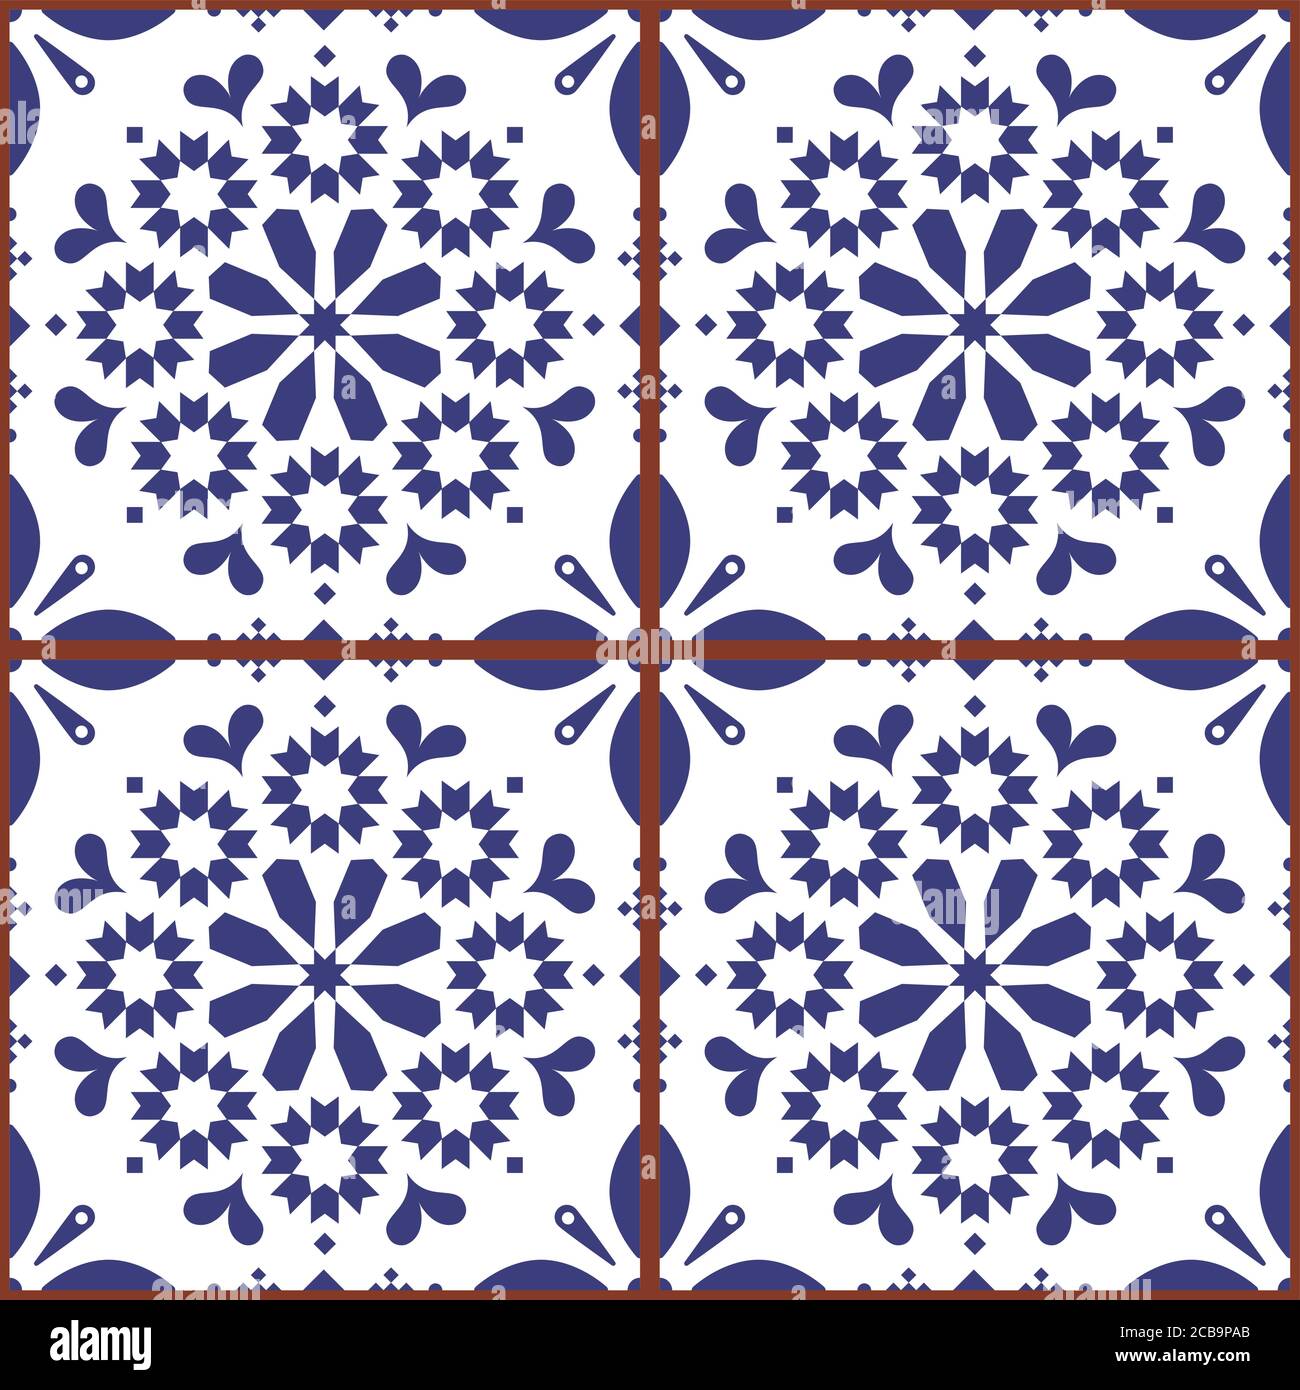 Marokkanische oder türkische Fliesen nahtlose Vektor-Design, weiß und indigoblau repetitive geometrische Muster Stock Vektor